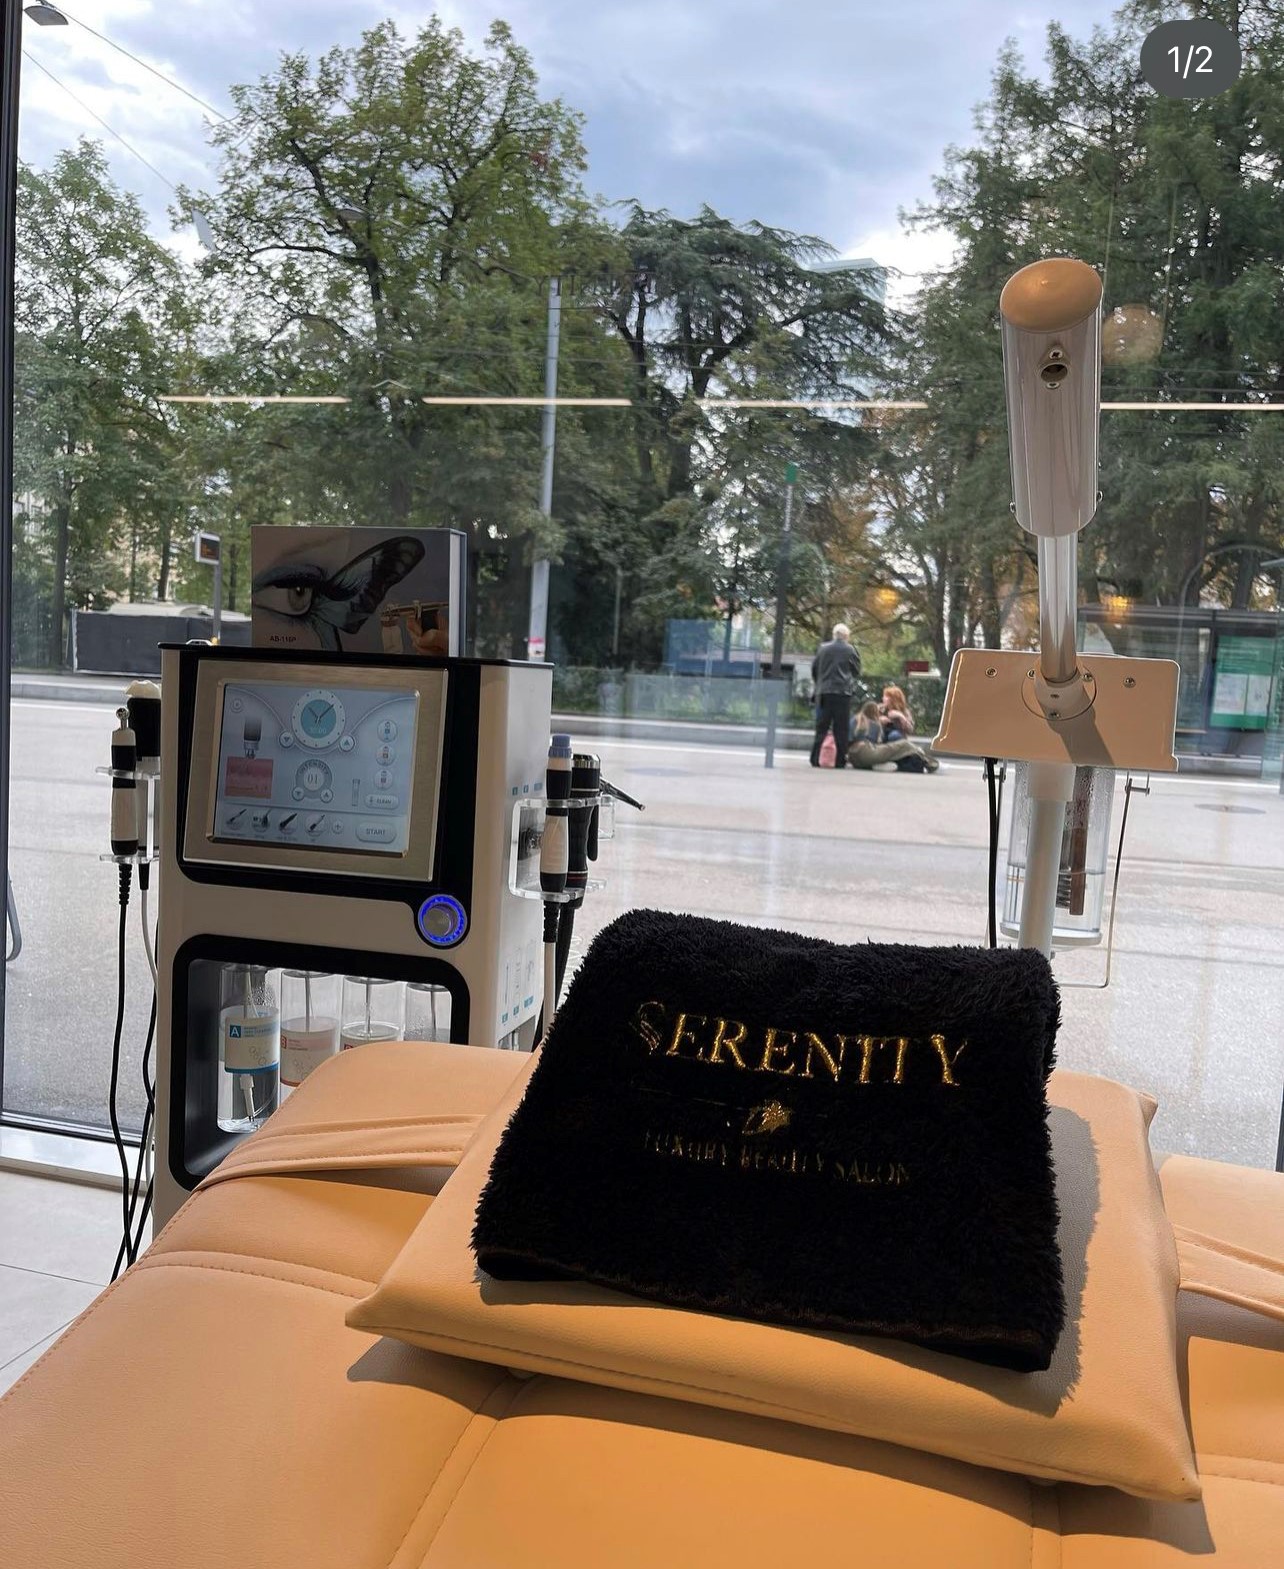 Bilder Serenity Luxury Beauty & Hair Salon